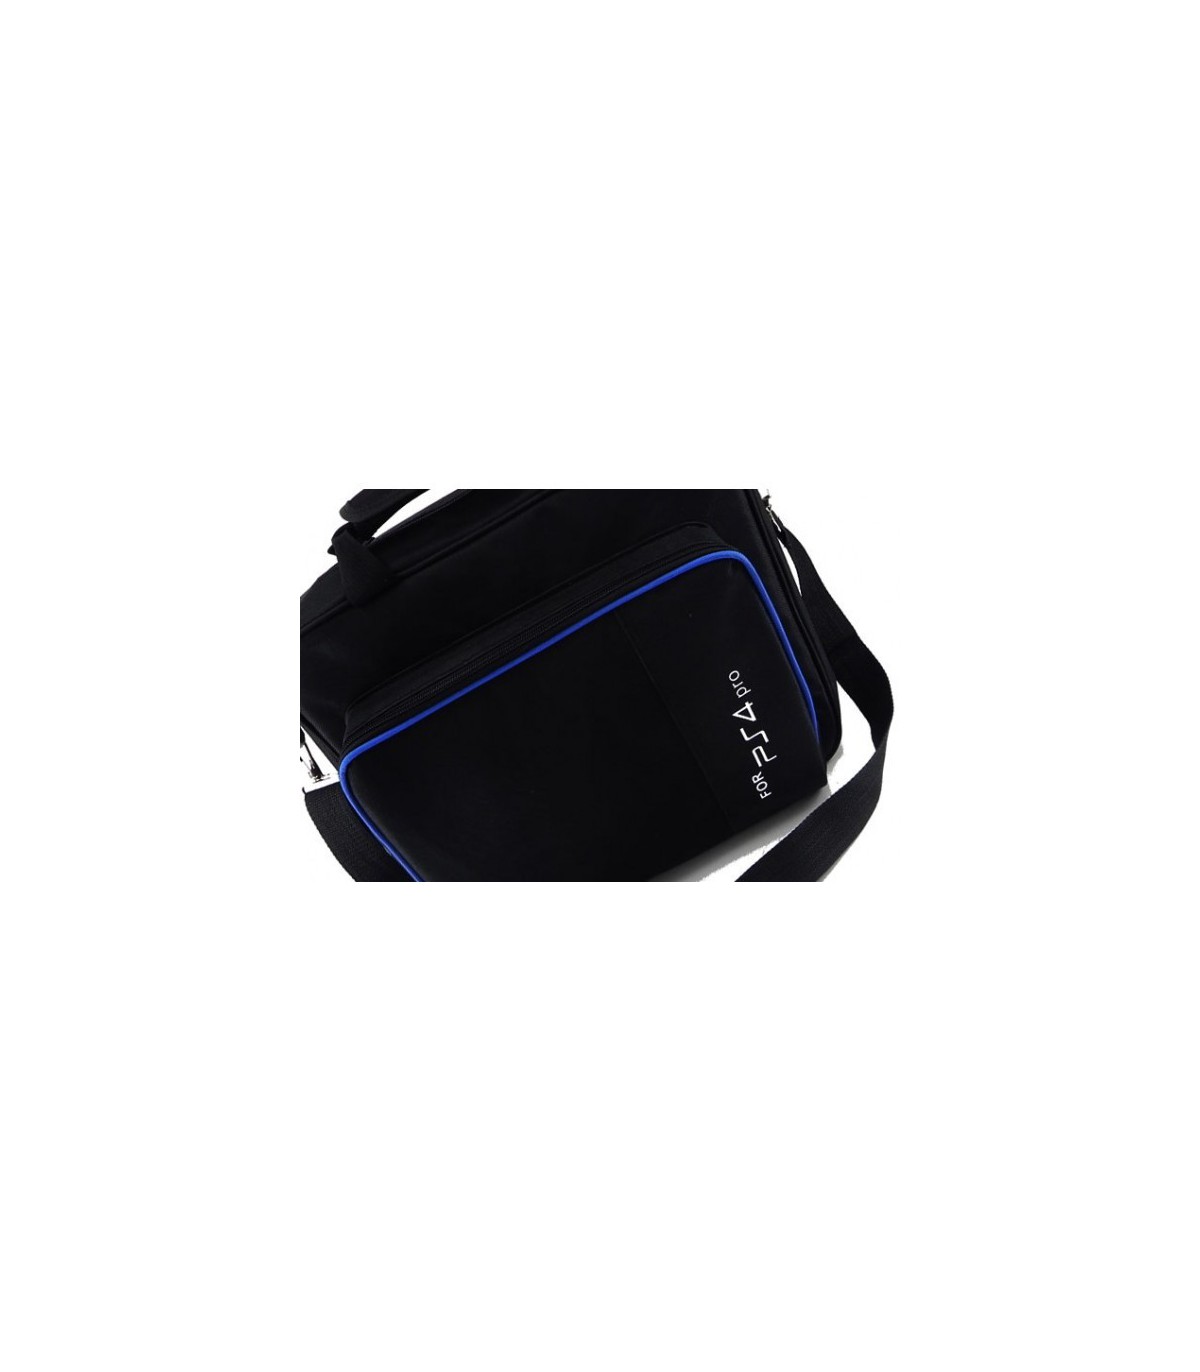 کیف پلی استیشن 4 پرو - Playstation 4 Pro Bag GAMERTEK